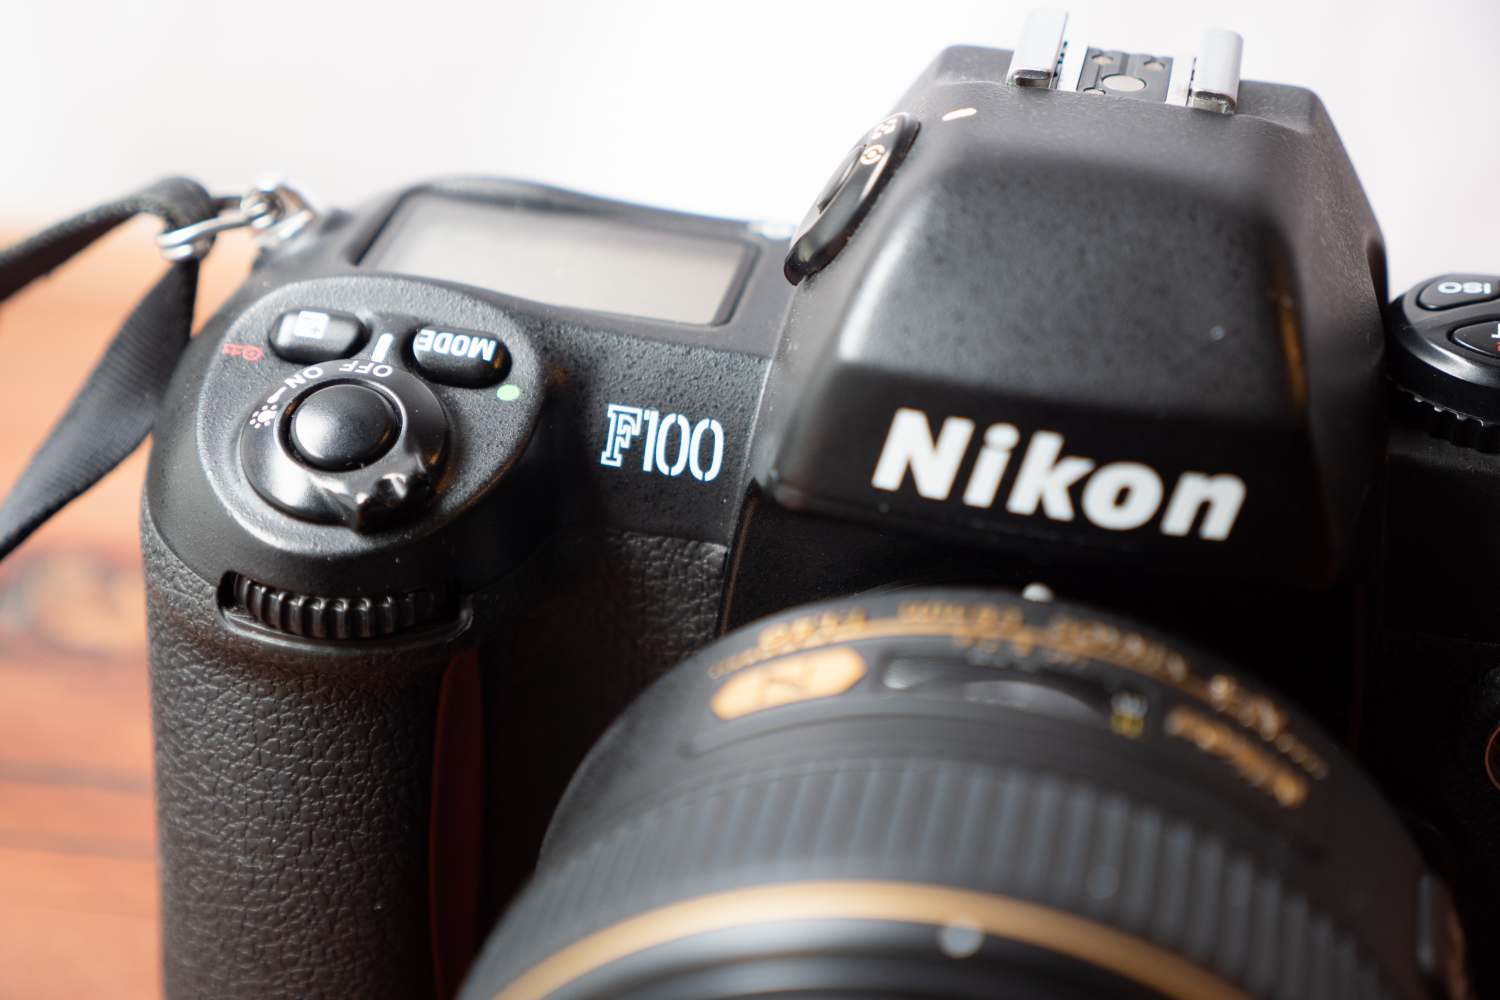 フィルムAFカメラ NIKON F100を購入。デジタル的な操作感のフィルム 